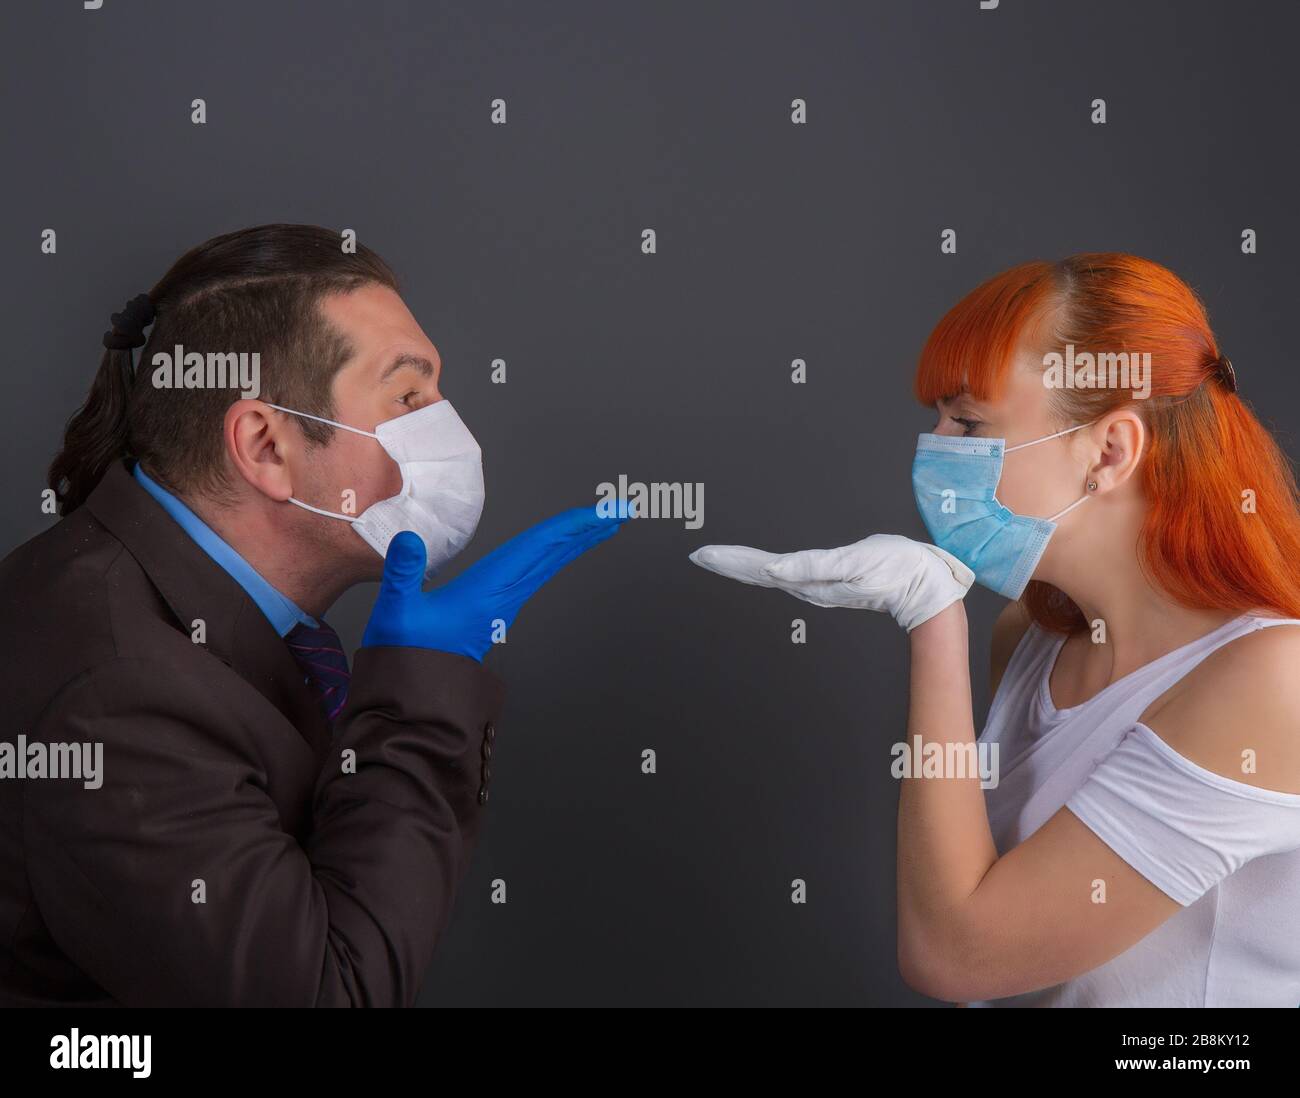 homme et fille masqués Banque D'Images